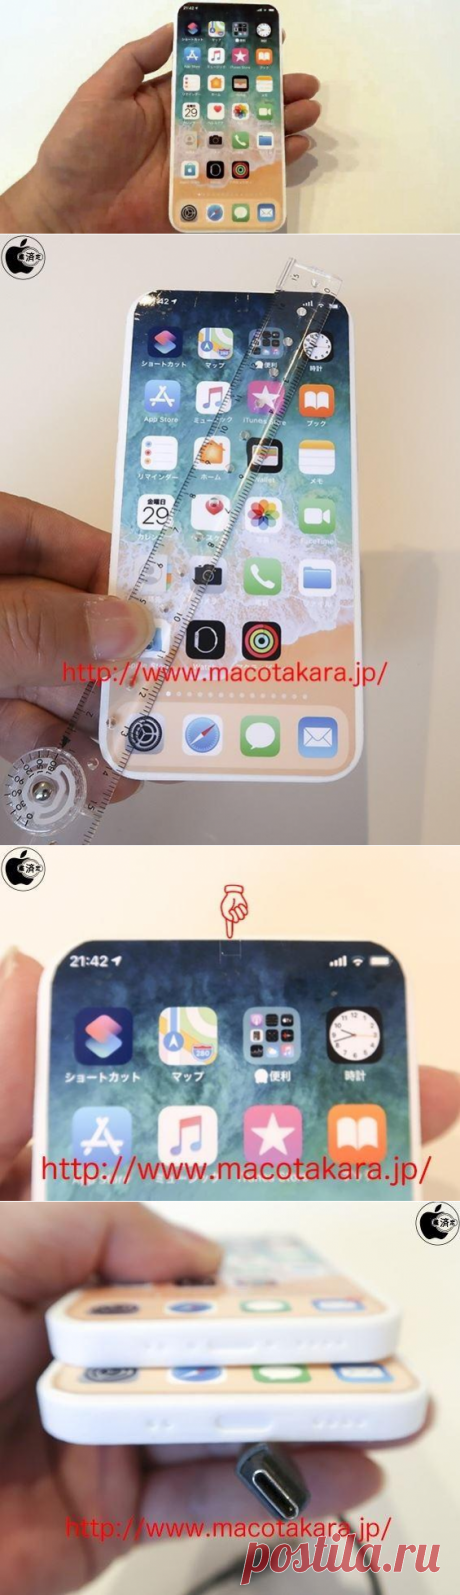 В сеть попал макет будущего iPhone 13 | Super-Blog